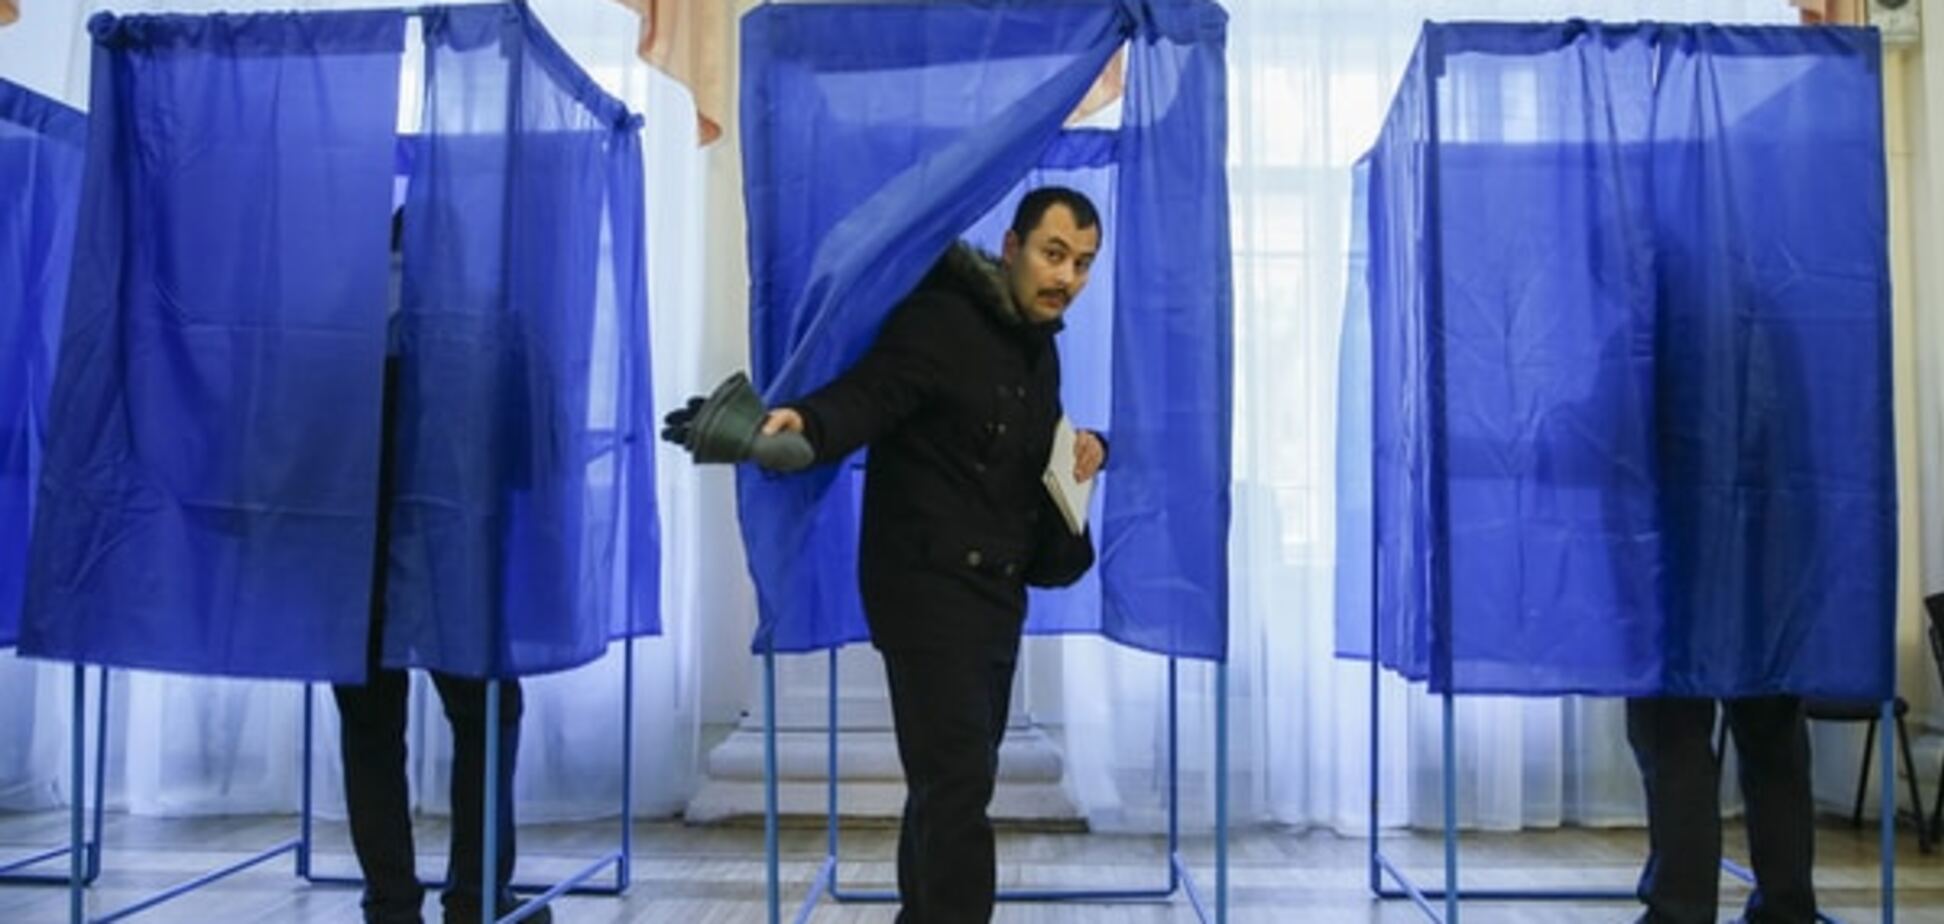 Наступні вибори в Україні запропонували провести в електронному форматі 